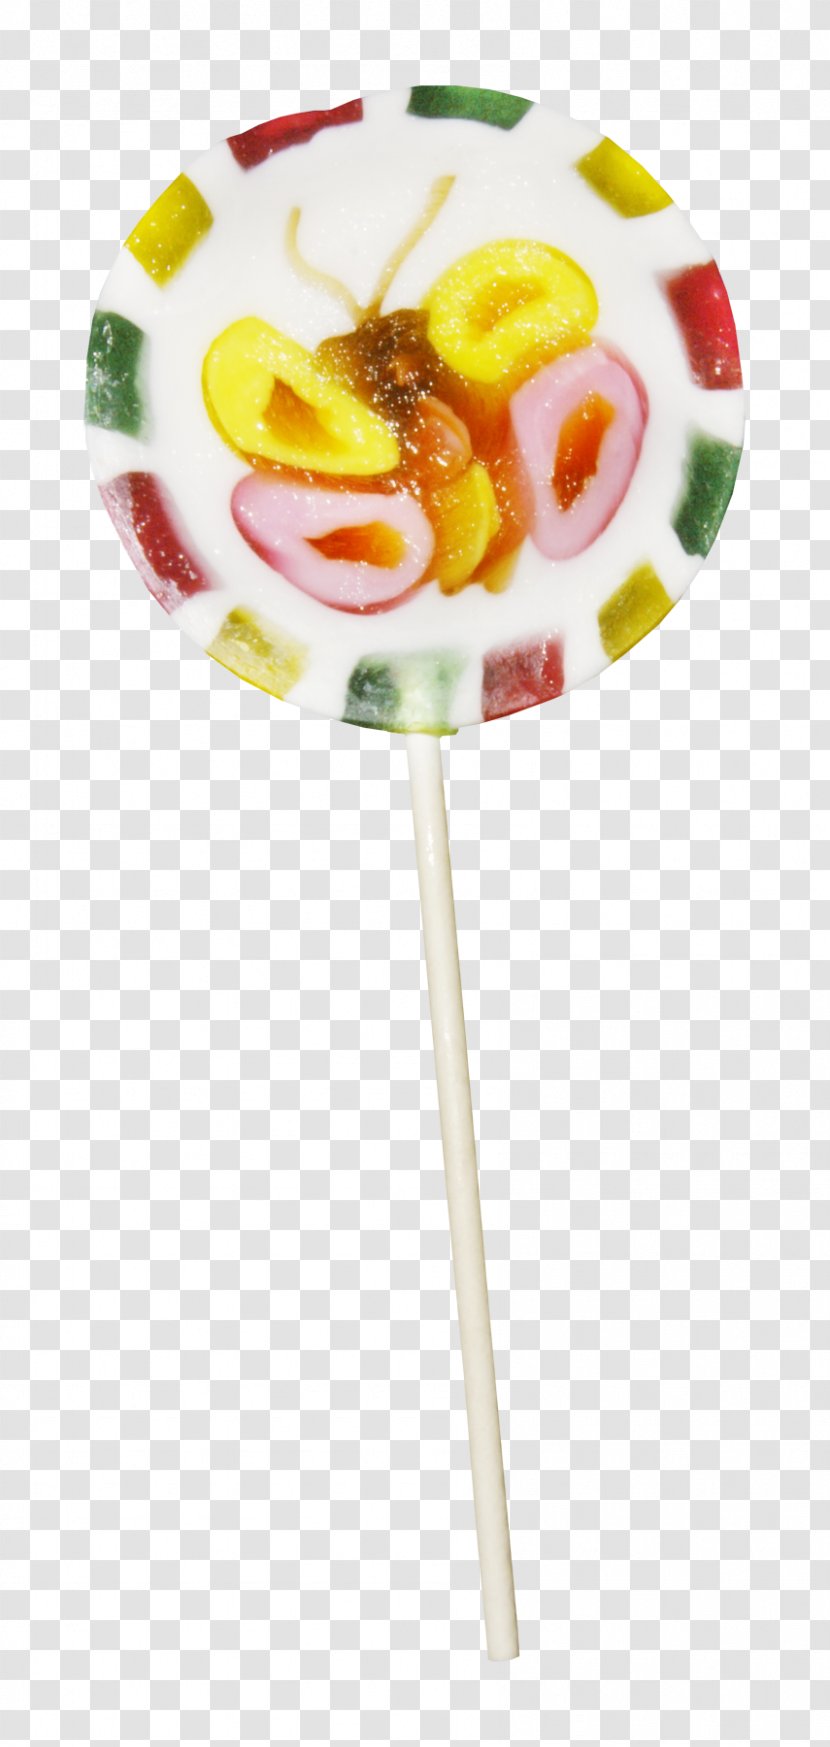 Lollipop Auglis Fruit - Confectionery - Color Lollipops Transparent PNG